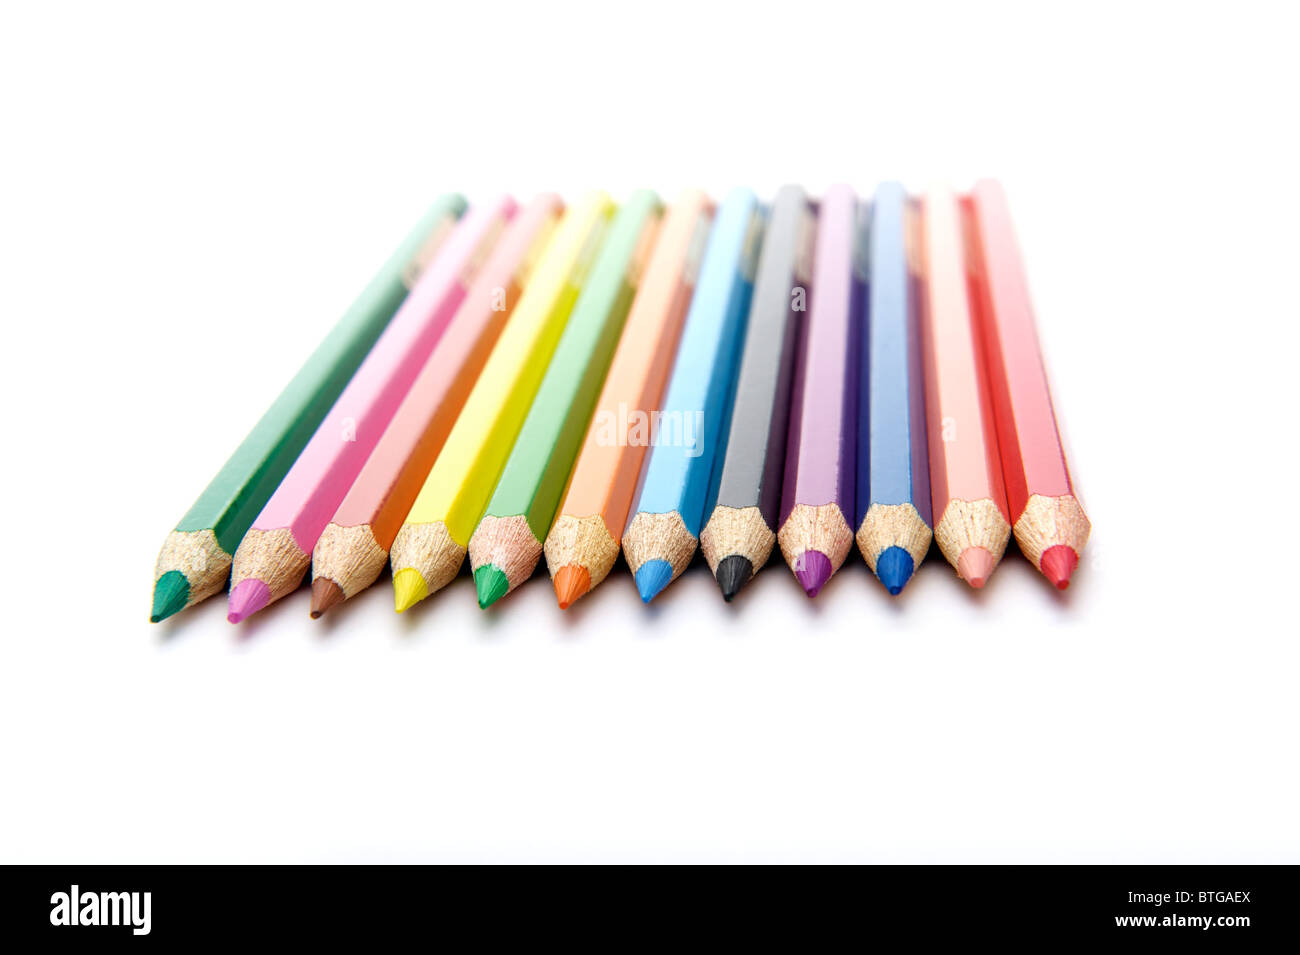 Fila horizontal de 12 lápices de colores Foto de stock